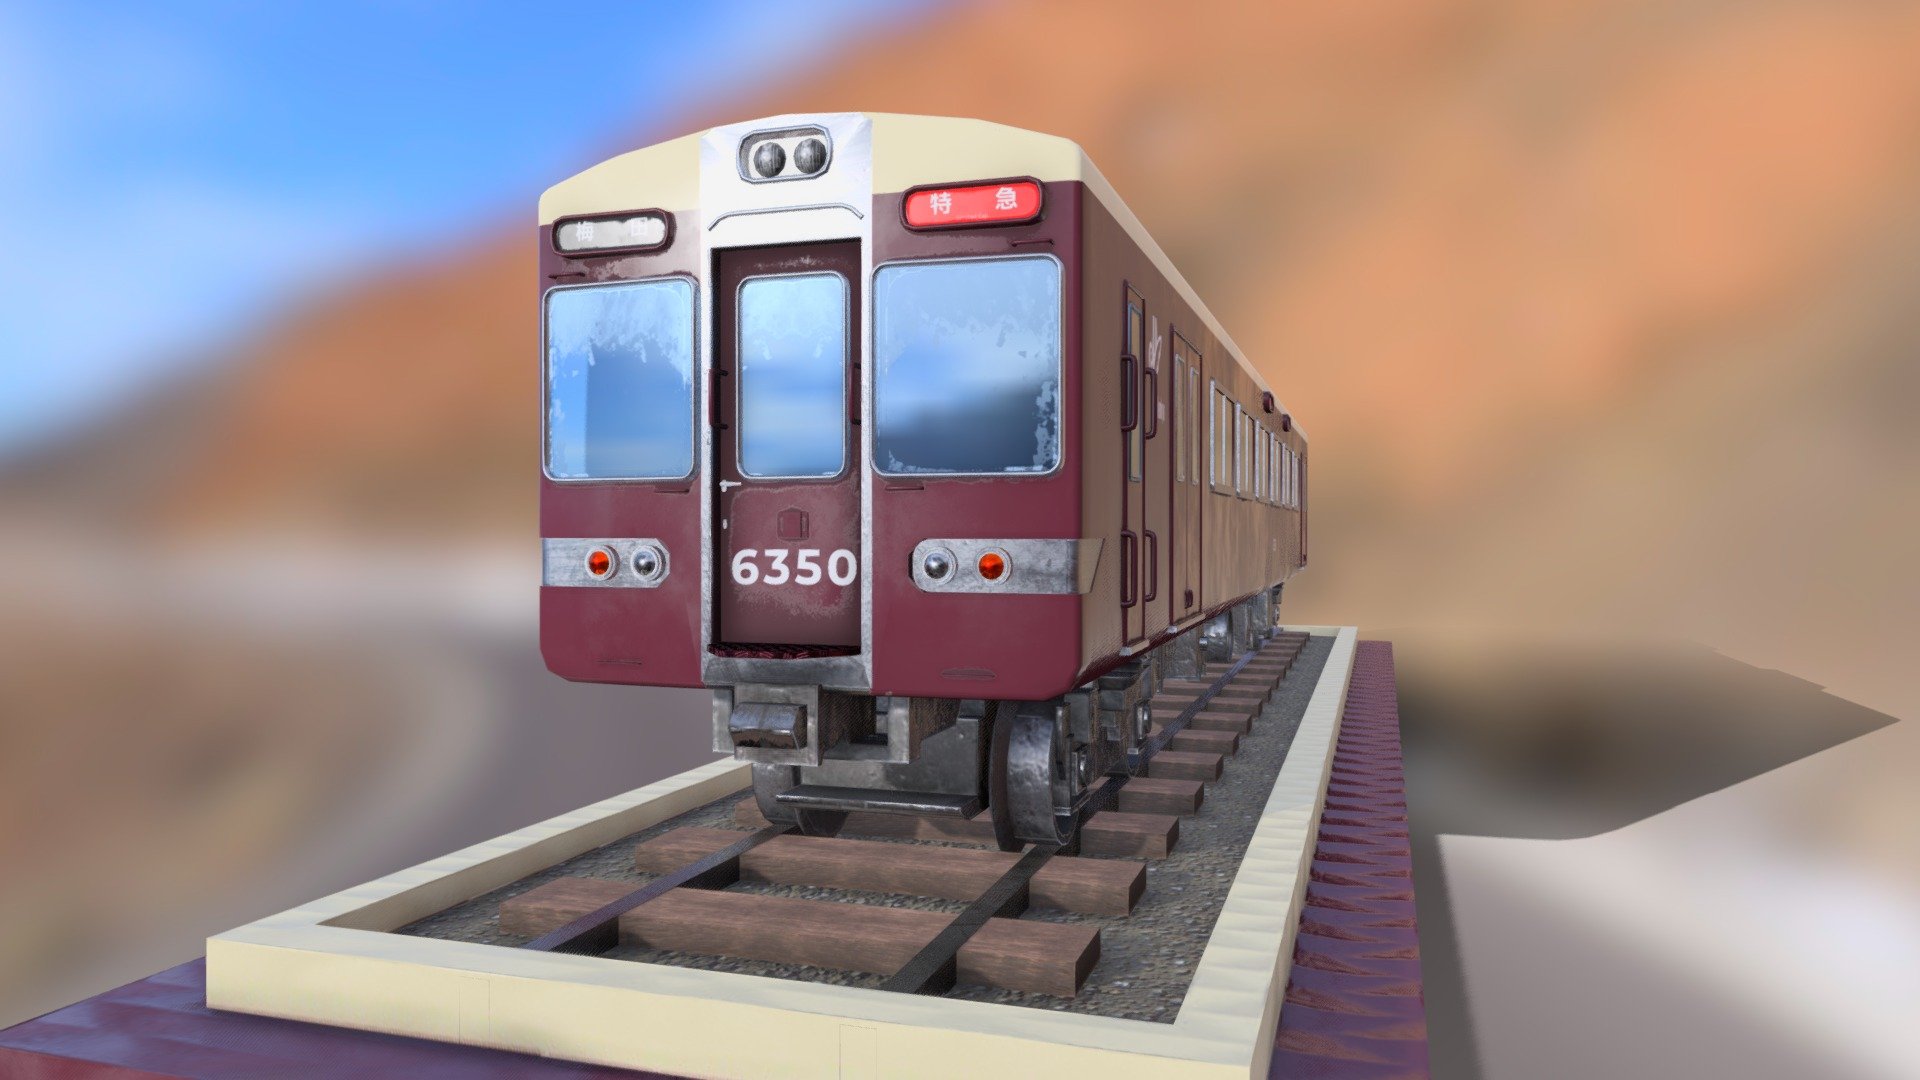 JR Hankyu-Train électrique ultra-fin en papier 3D pour enfant et